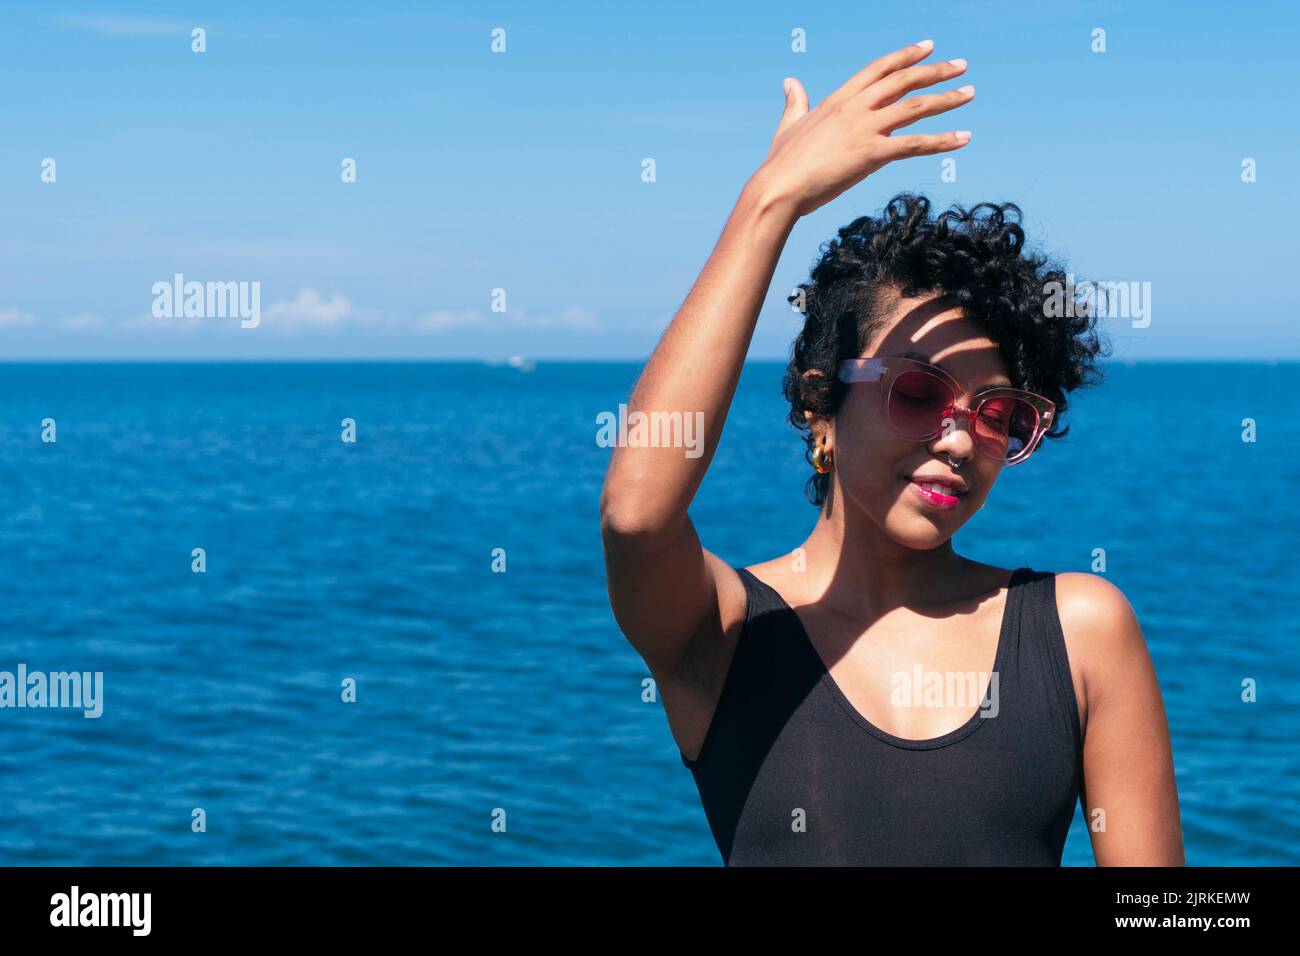 Fröhliche afroamerikanische Frau mit lockigen Haaren, die mit dem Arm nach oben steht, während er unter blauem Himmel einen Schatten auf sein Gesicht gegen den Ozean wirft Stockfoto